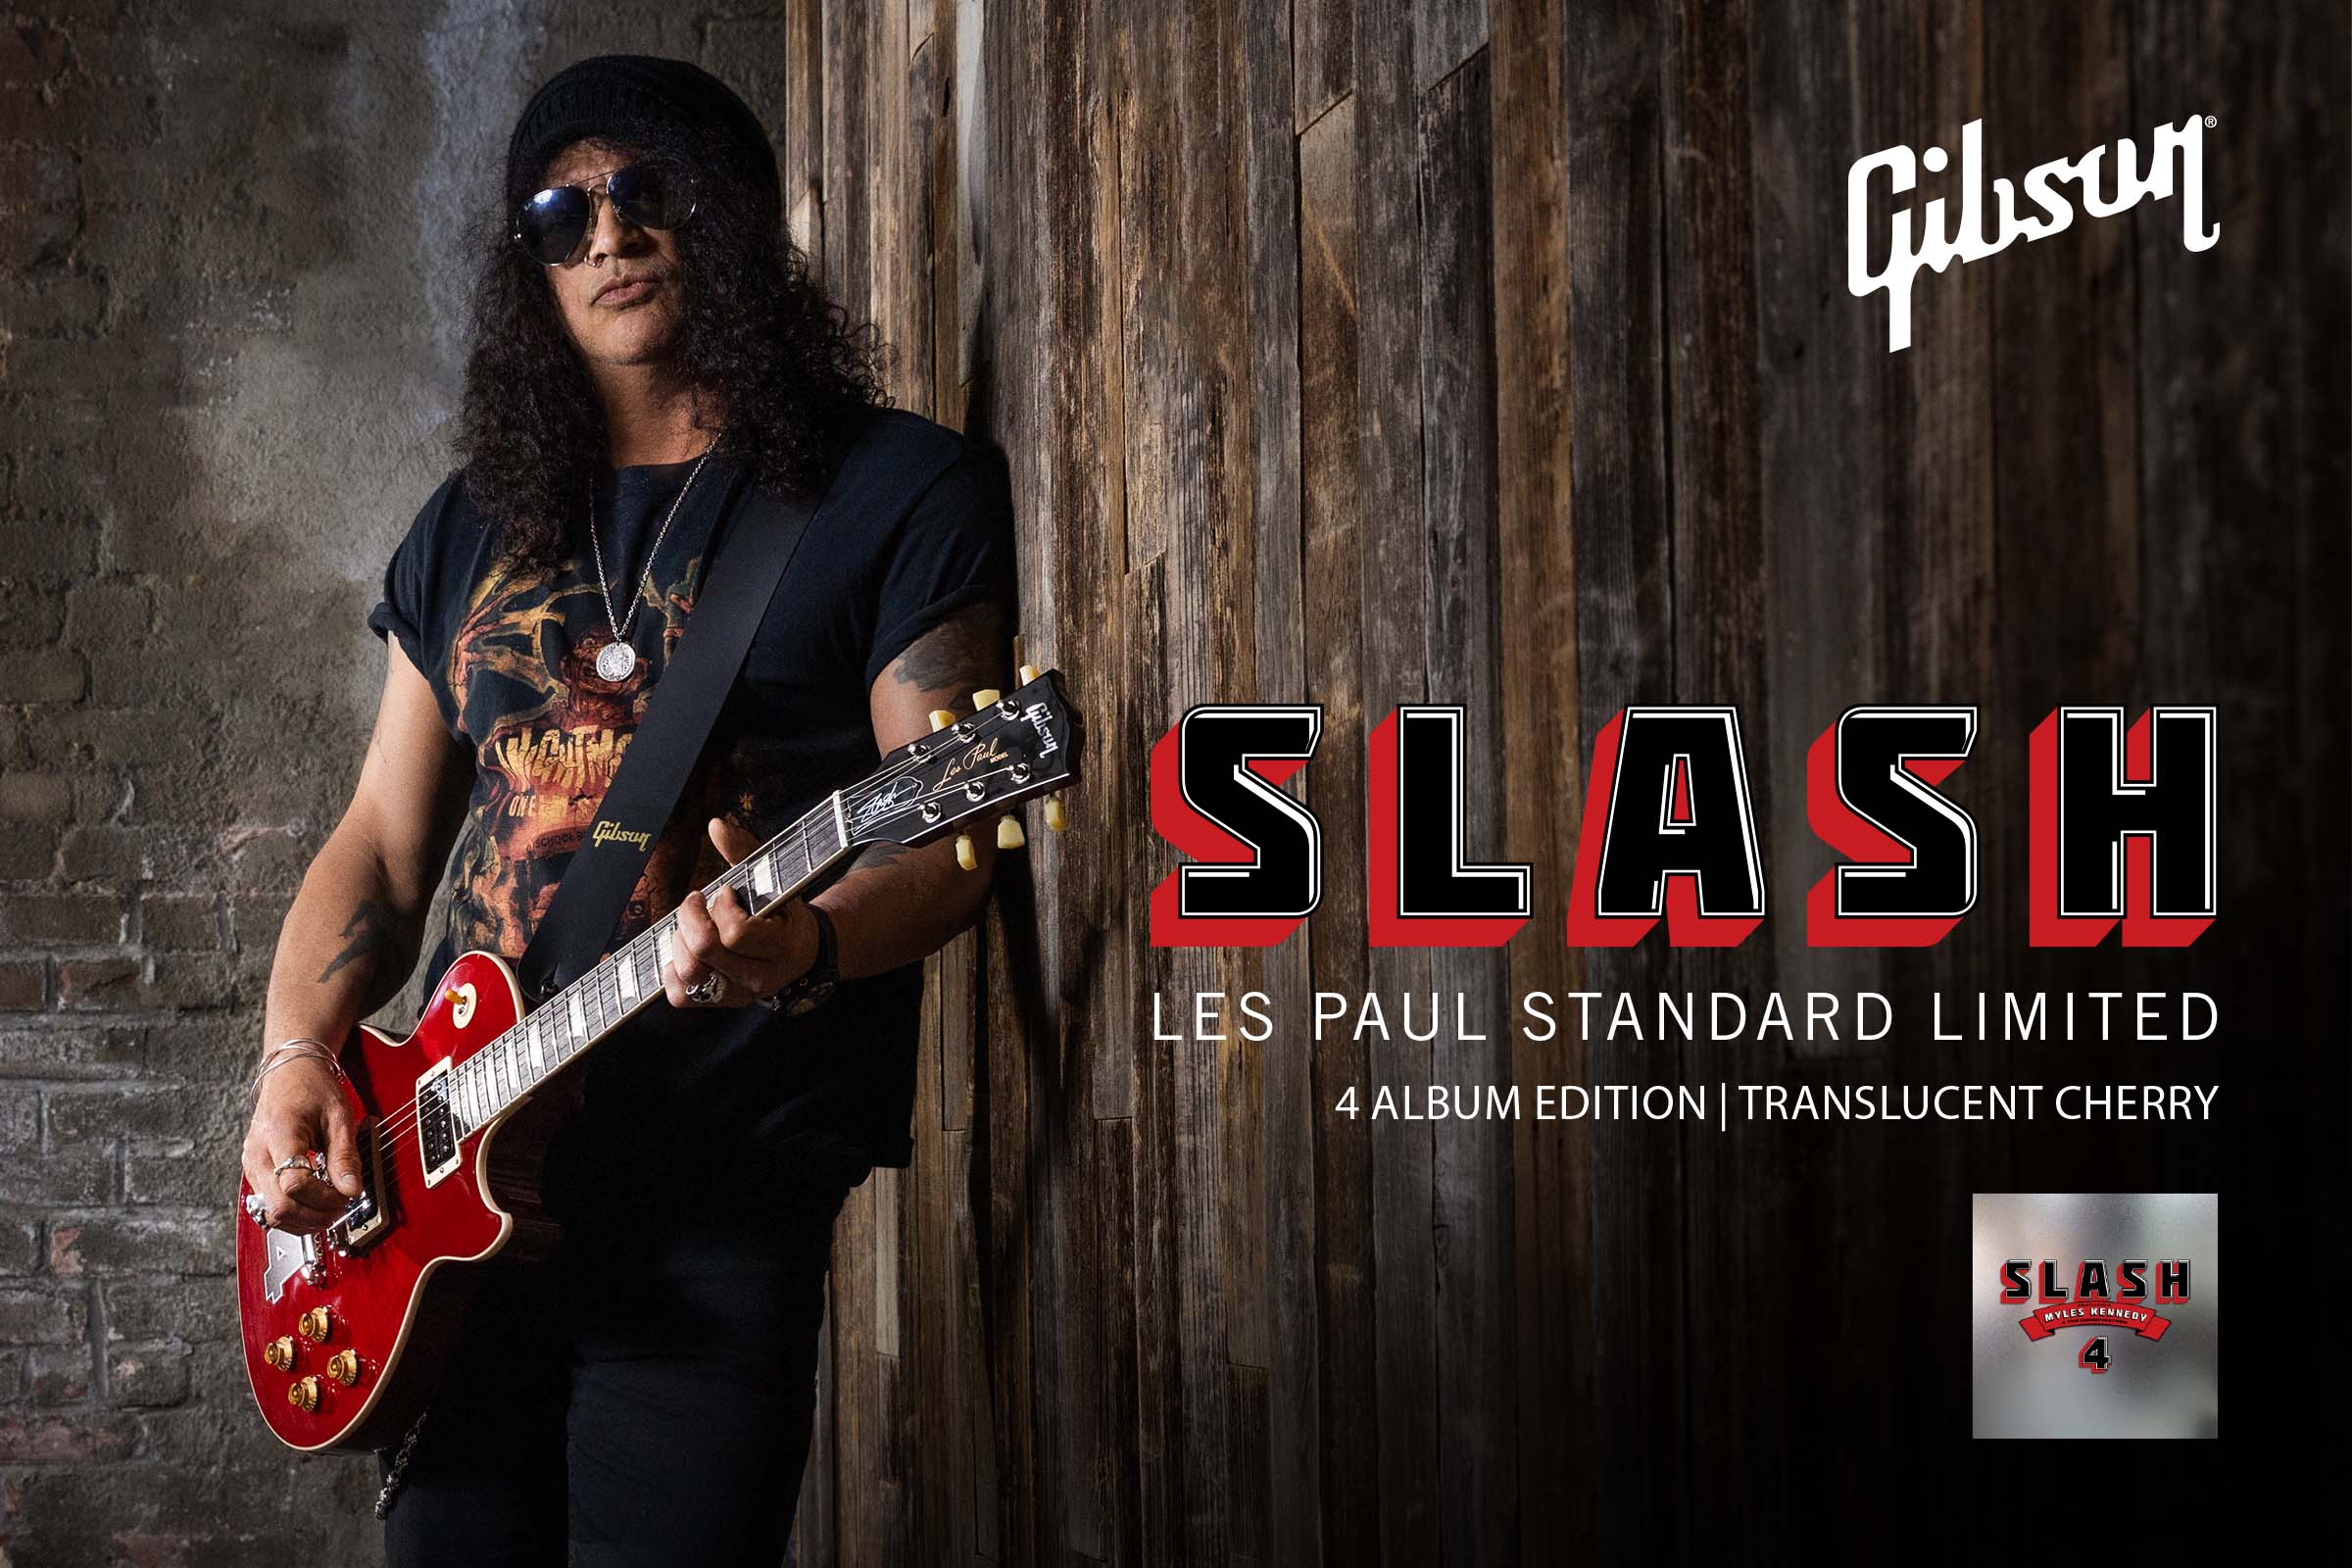 Gibson Slash Featuring Myles Kennedy And The Conspiratorsのニューアルバム 4 の発売に合わせた世界限定250本のリミテッドエディションが入荷 こちらイケベ新製品情報局